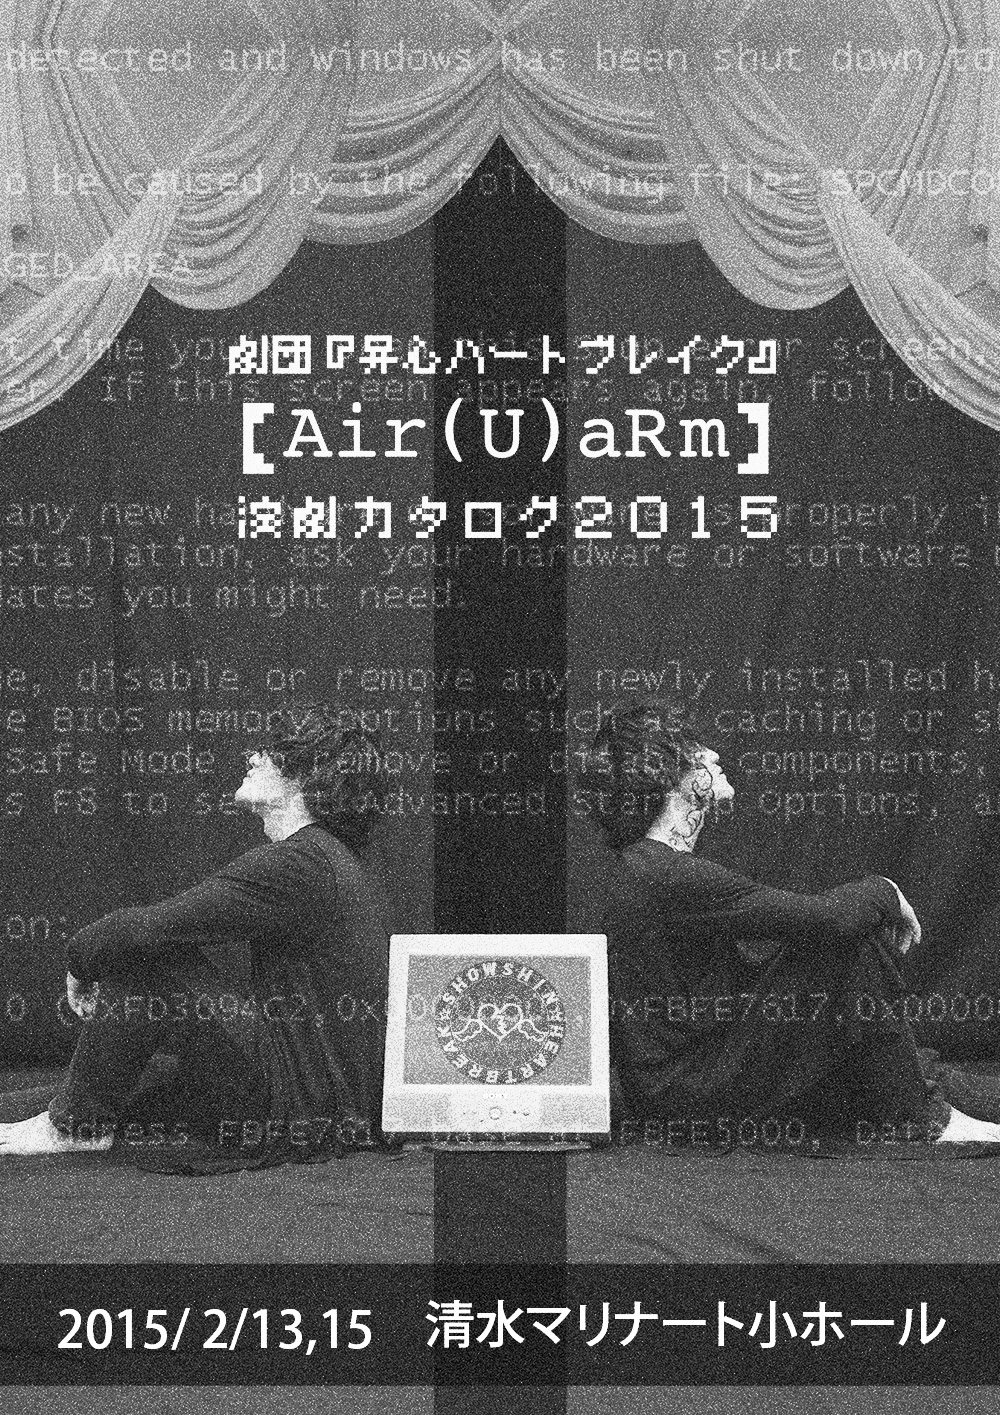 【Air(U)aRm】